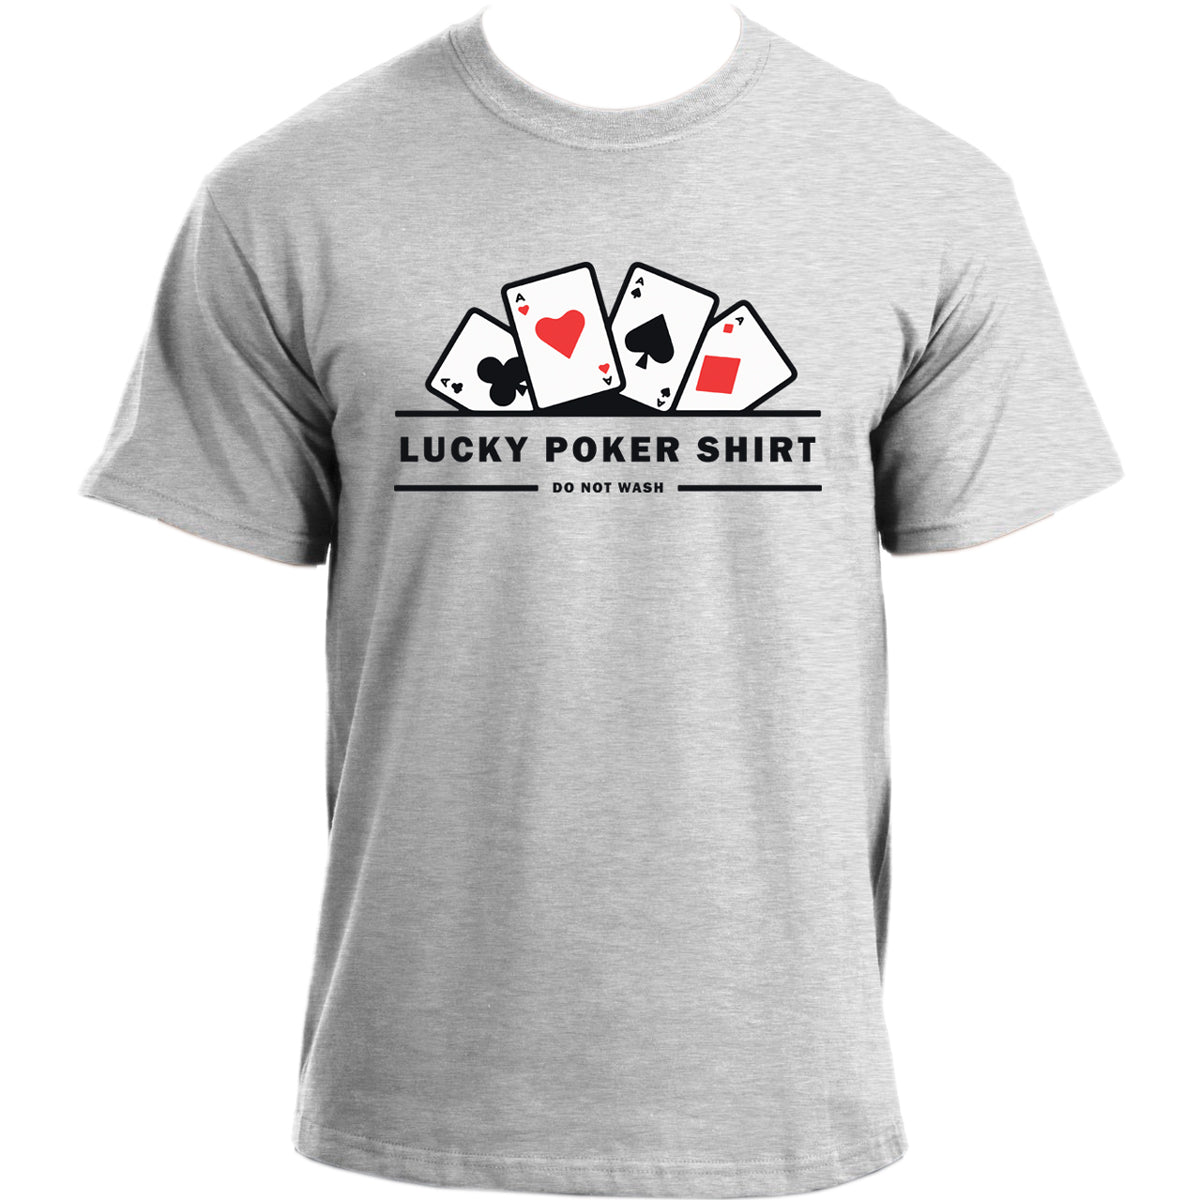 Lucky Poker T-Shirt I Poker Player T Shirt I Funny Poker Tshirt for Men